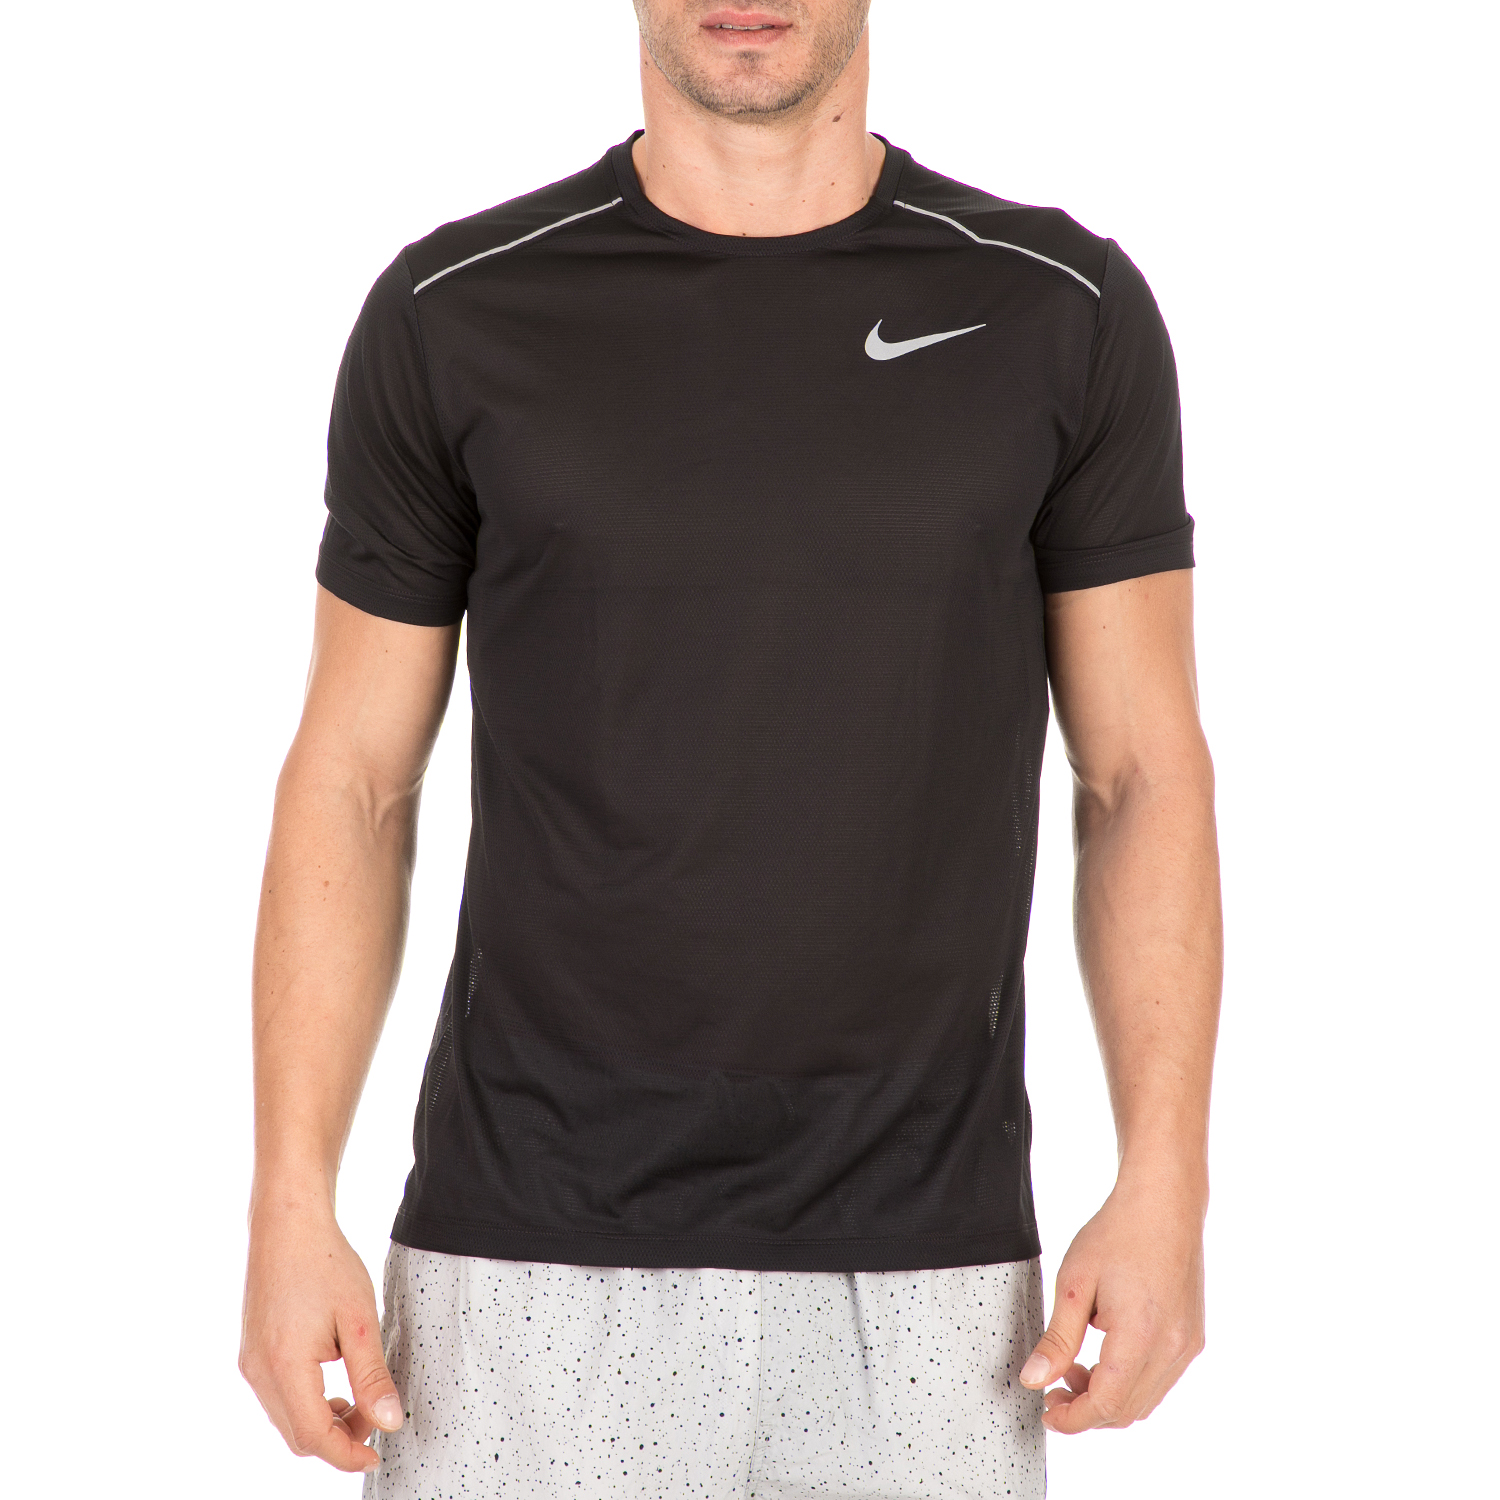 Ανδρικά/Ρούχα/Αθλητικά/T-shirt NIKE - Ανδρικό t-shirt NIKE DRY COOL MILER μαύρο